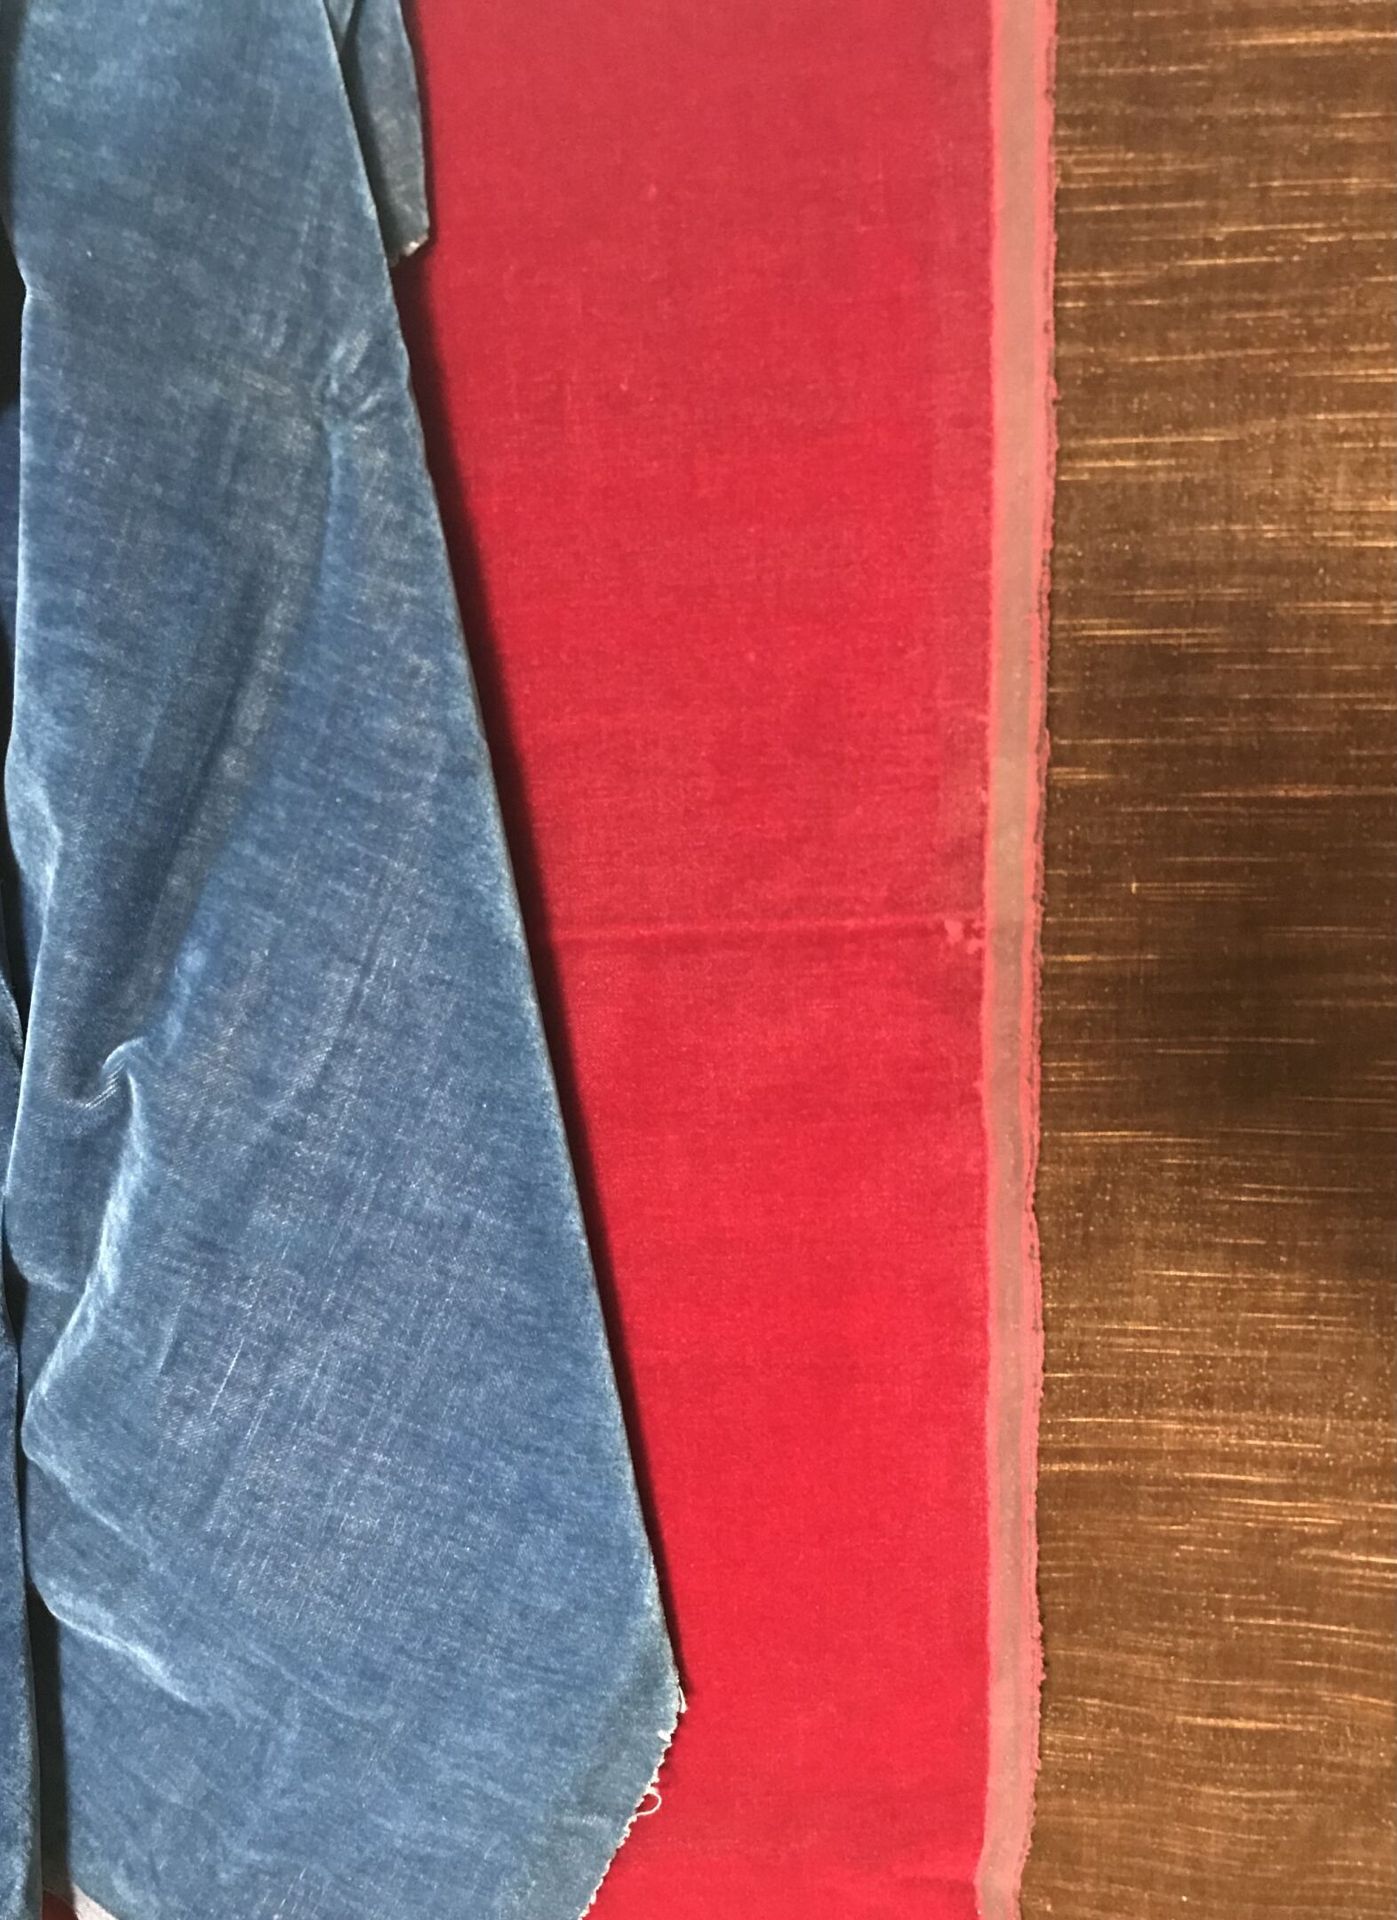 Null 路易十四风格的马海毛绒、羊毛切割绒、绿色、蓝色、深红色和巧克力色以及绿色、粉色和米色条纹天鹅绒的套装。

八个杯子的平均尺寸为130 x 130厘米。